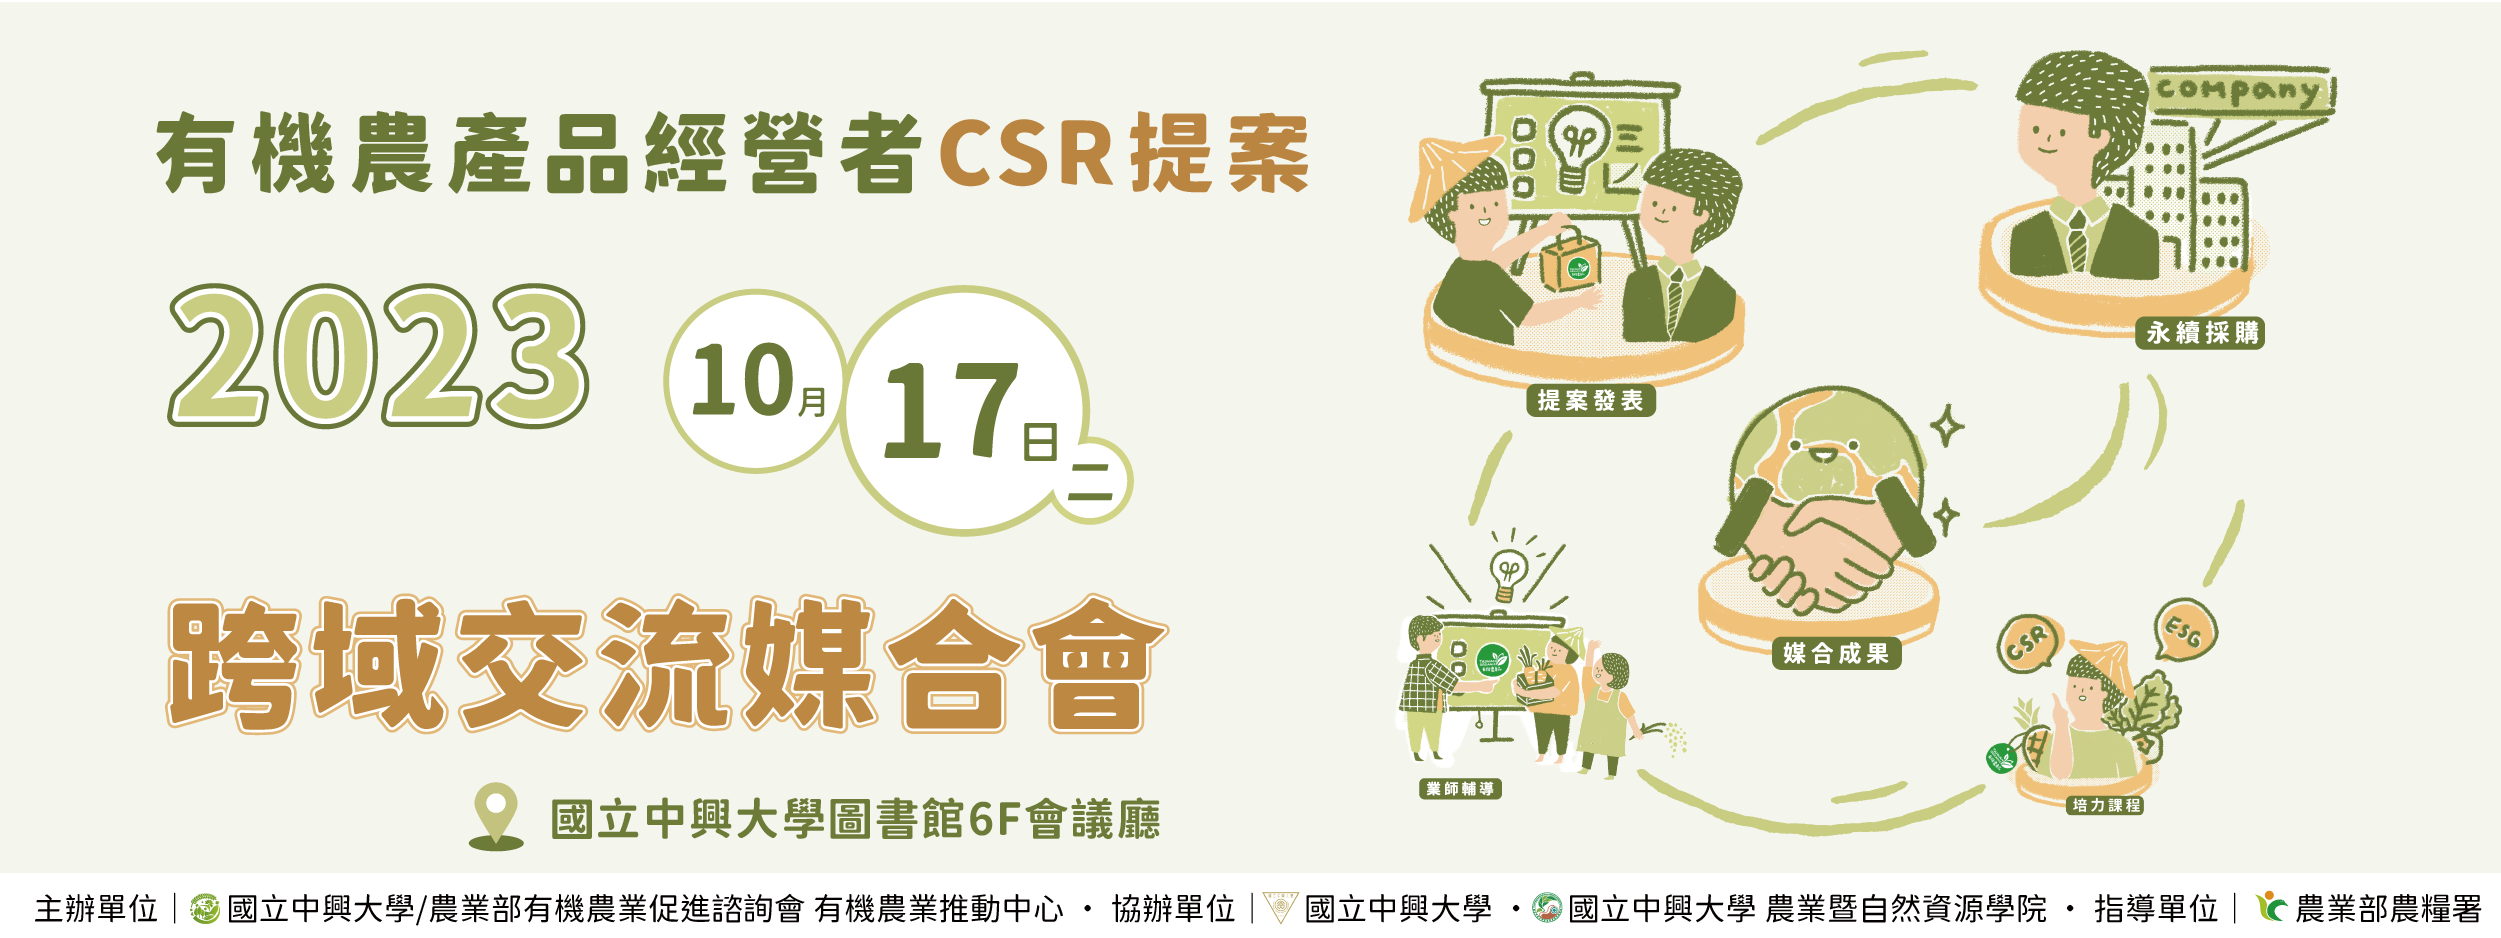 「2023有機農產品經營者CSR提案 跨域交流媒合會」歡迎企業報名